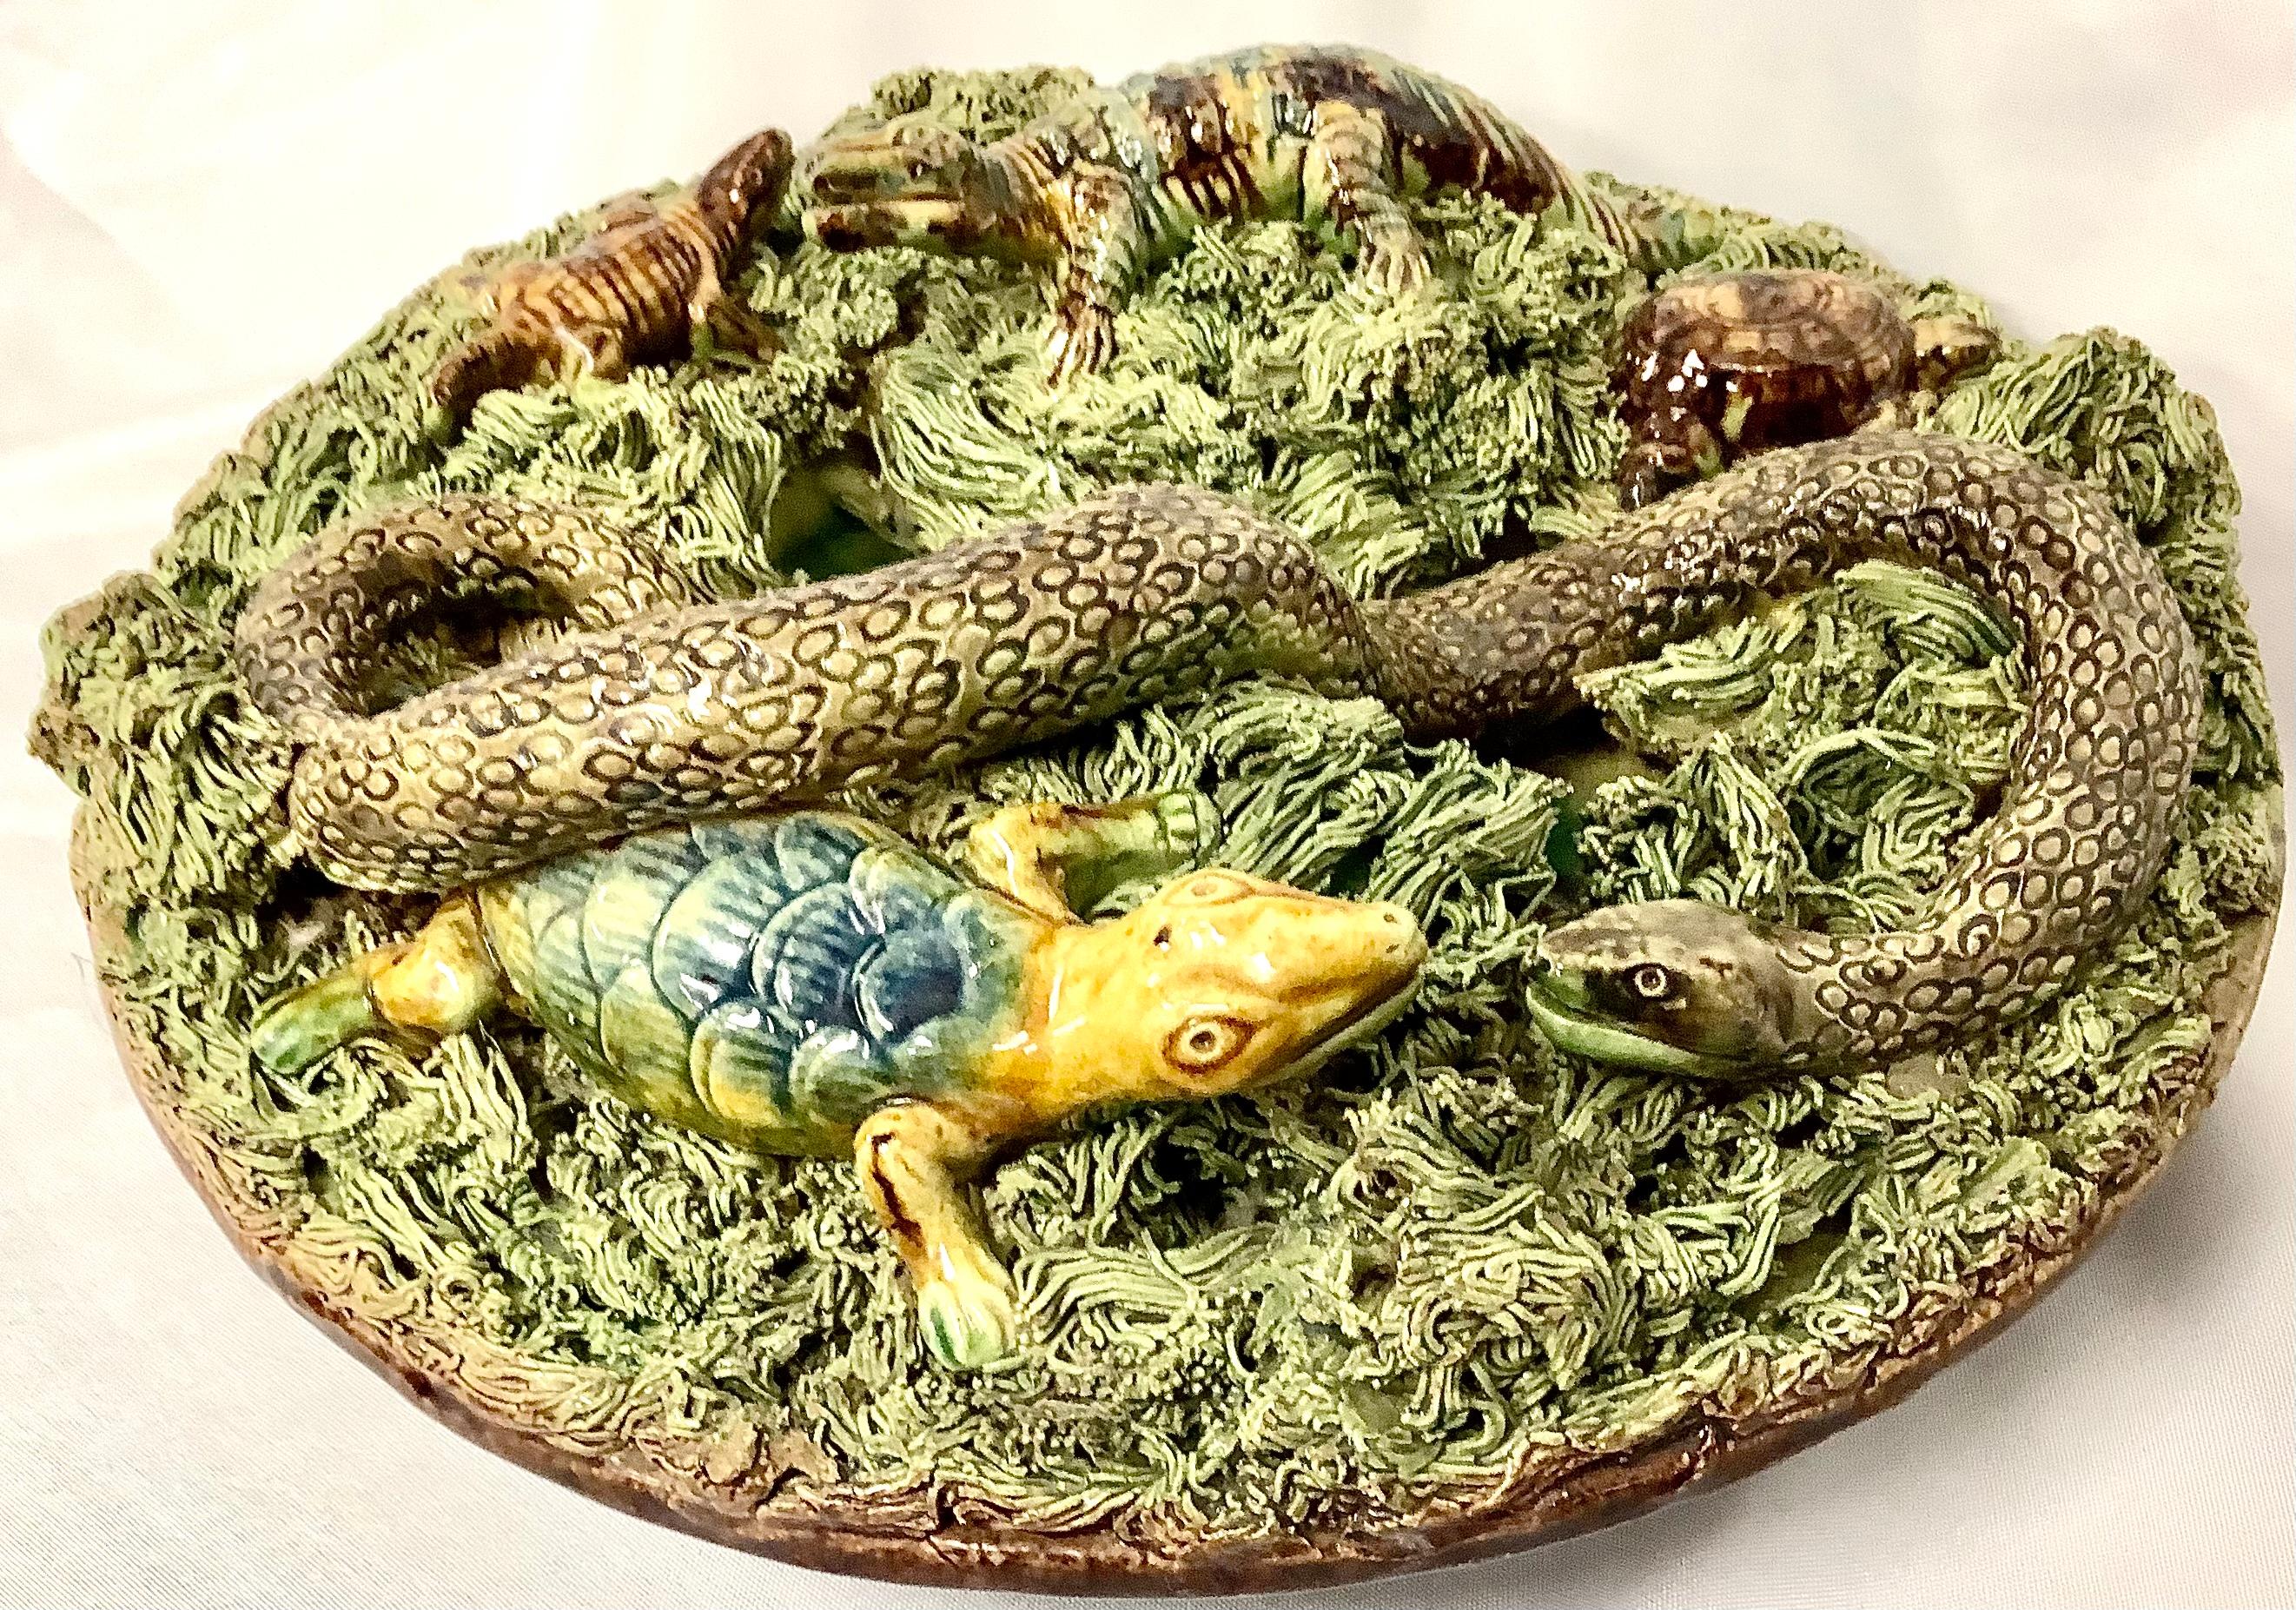 assiette Palissy portugaise du XIXe siècle avec un grand serpent et plusieurs crocodiles, une tortue, tous nichés sur une touffe de mousse. Le grand numéro 6 est embossé au dos. Les couleurs sont le vert sauge et le brun.